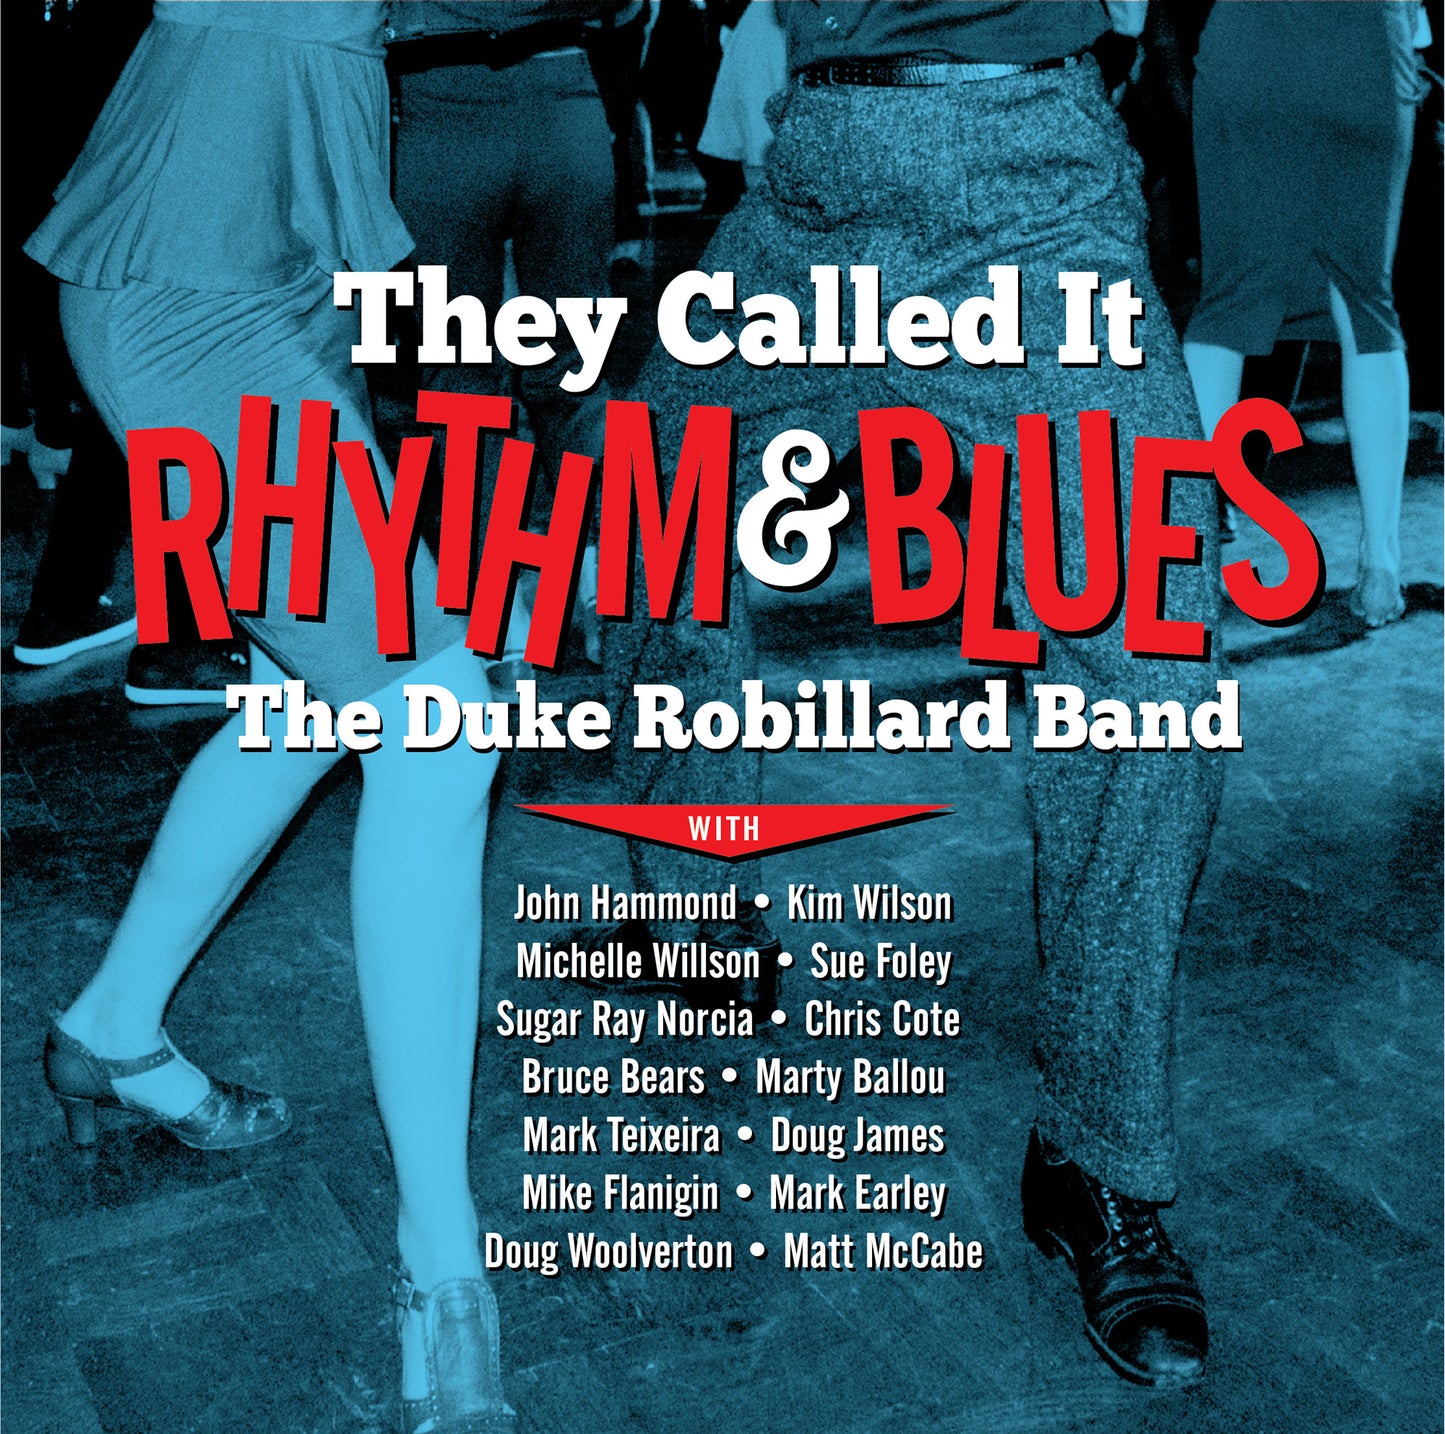 CD - The Duke Robillard Band - They Called It Rhythm & Blues